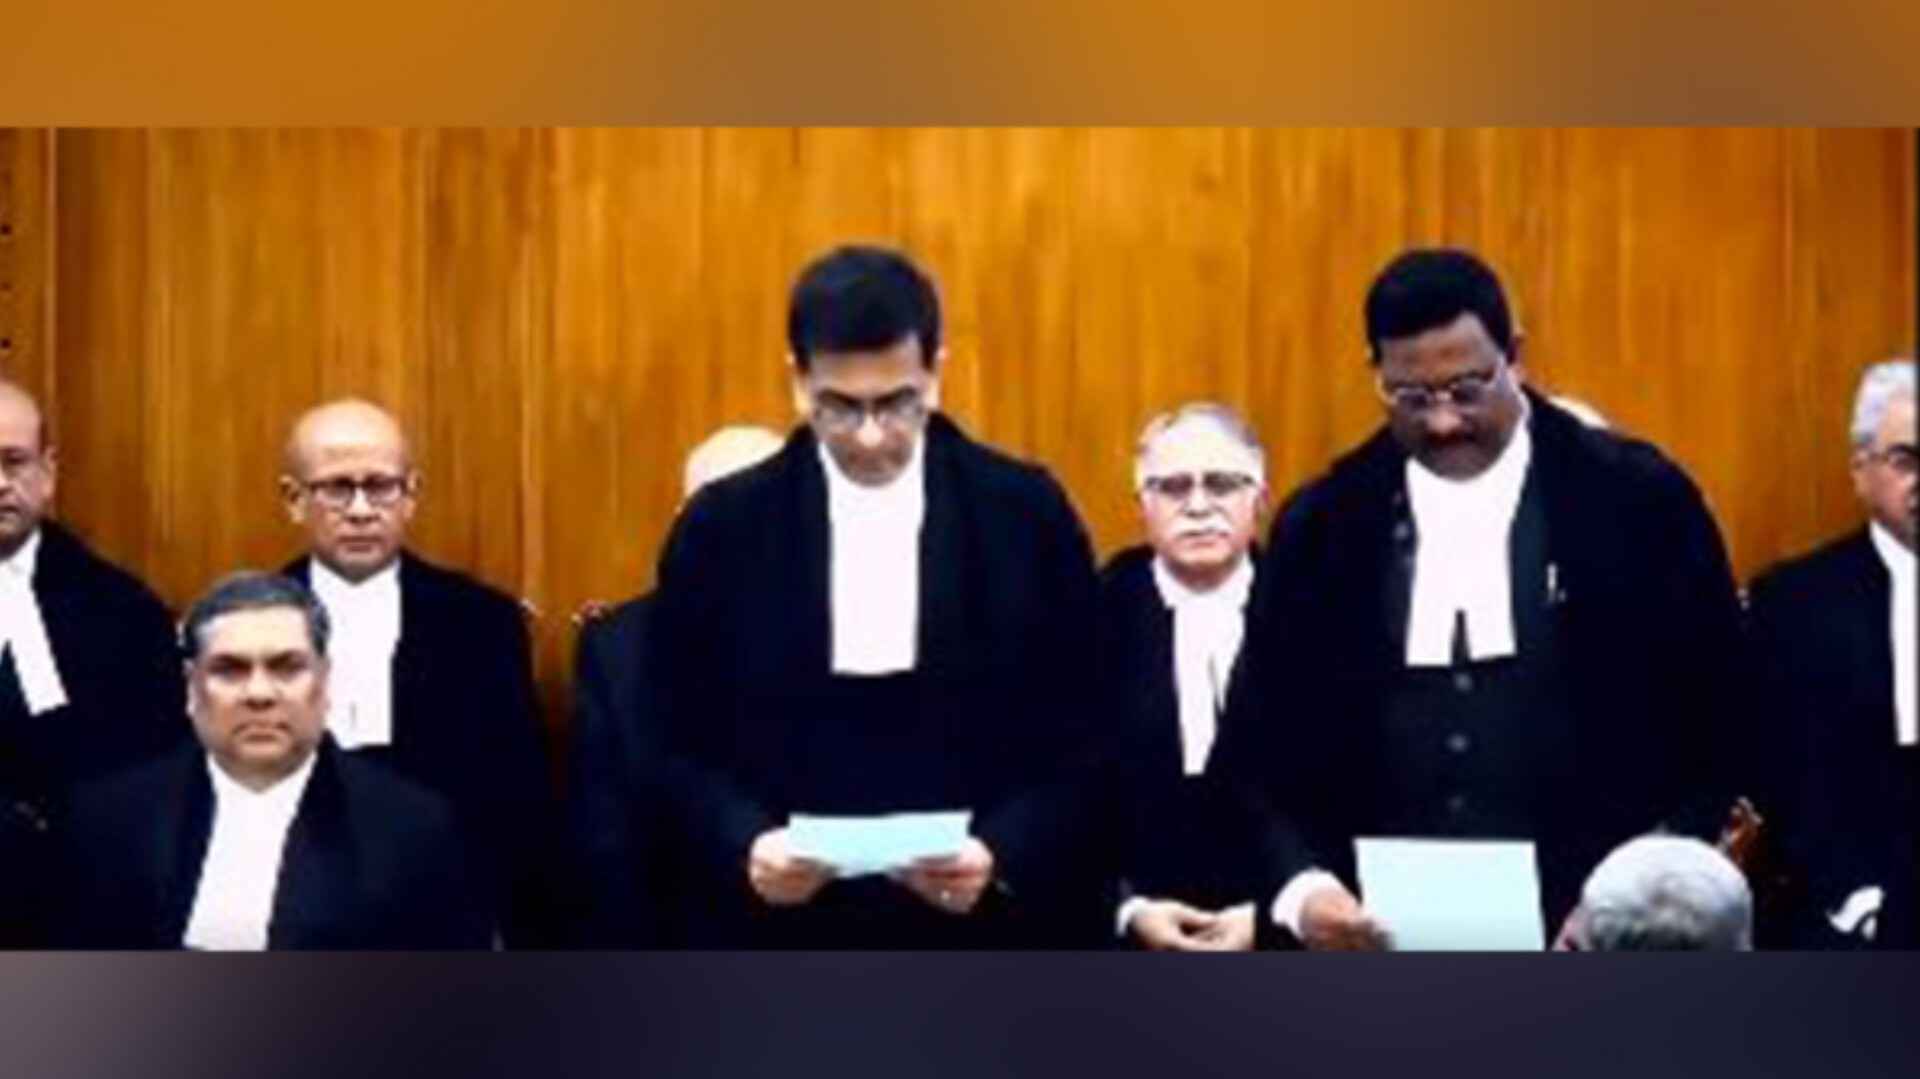 जस्टिस पीबी वराले ने सुप्रीम कोर्ट जज के रूप में शपथ ली, शीर्ष अदालत में पूरी हुई जजों की संख्या